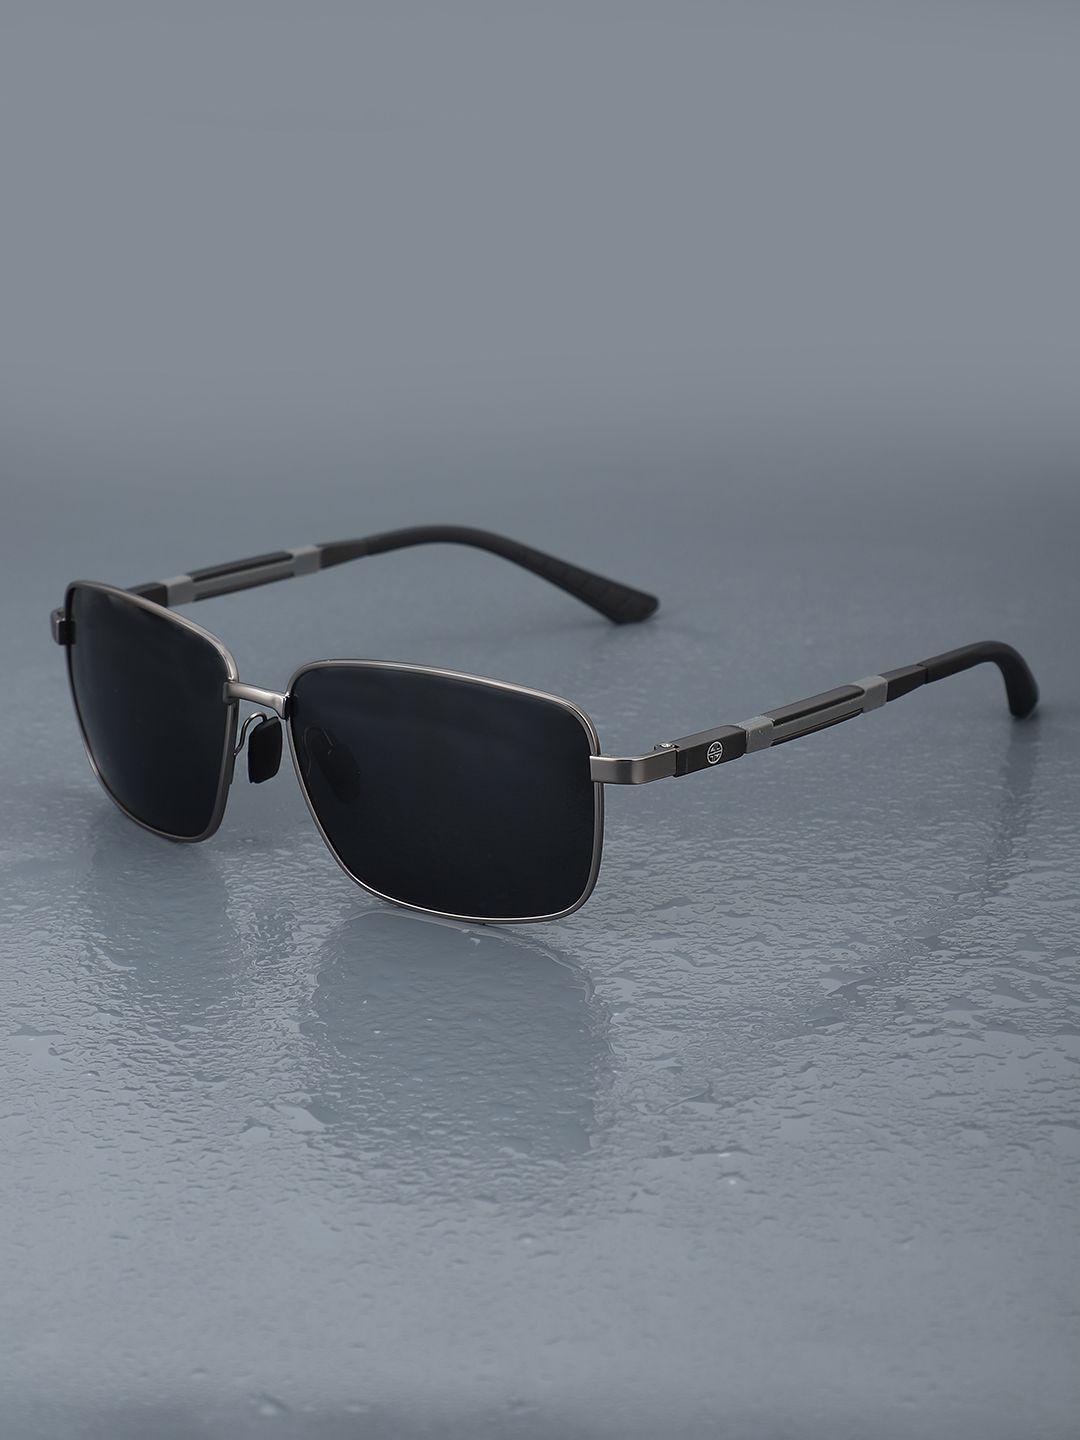 carlton london premium men aviator sunglasses with polarised & uv protected lens clsm116